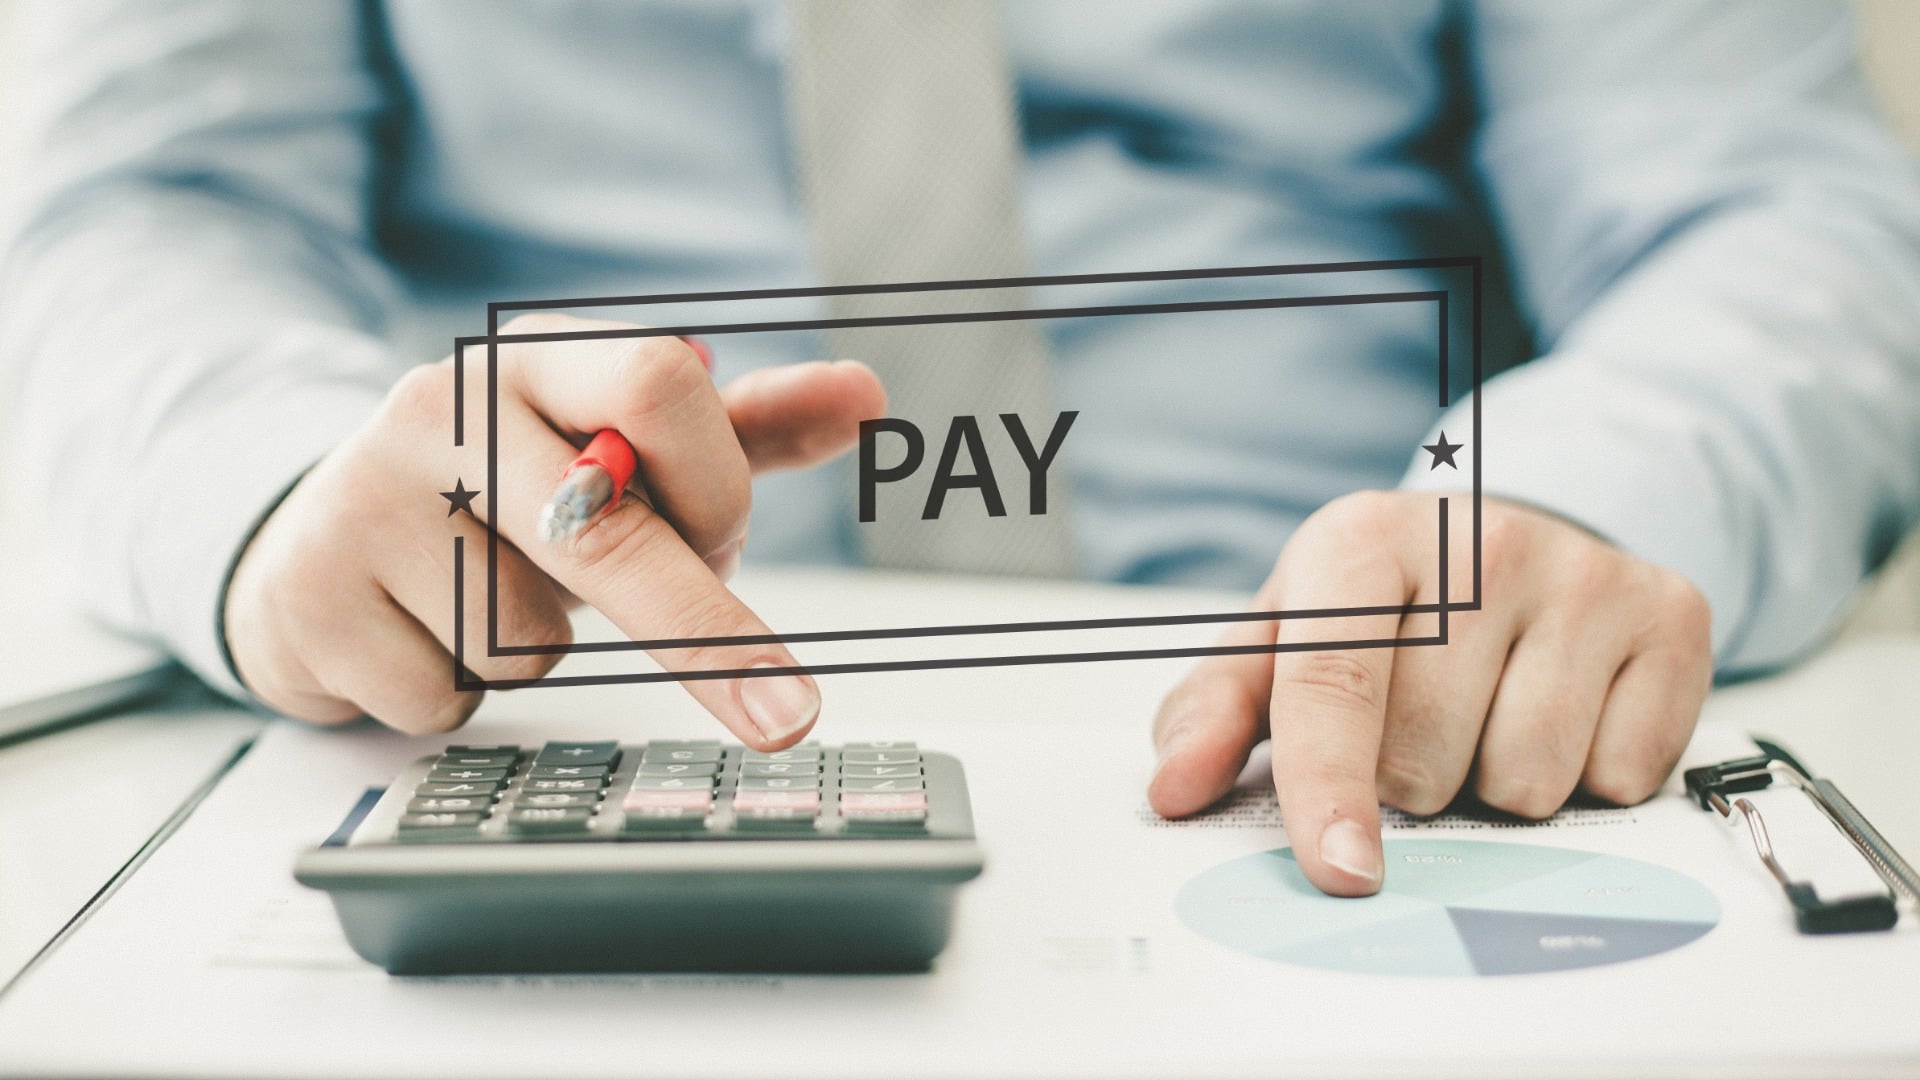 Bayar pajak kini dapat menggunakan metode pembayaran virtual account Bank BRI di OnlinePajak, memudahkan wajib pajak untuk melakukan pembayaran pajak secara online dengan tepat waktu, di mana saja.